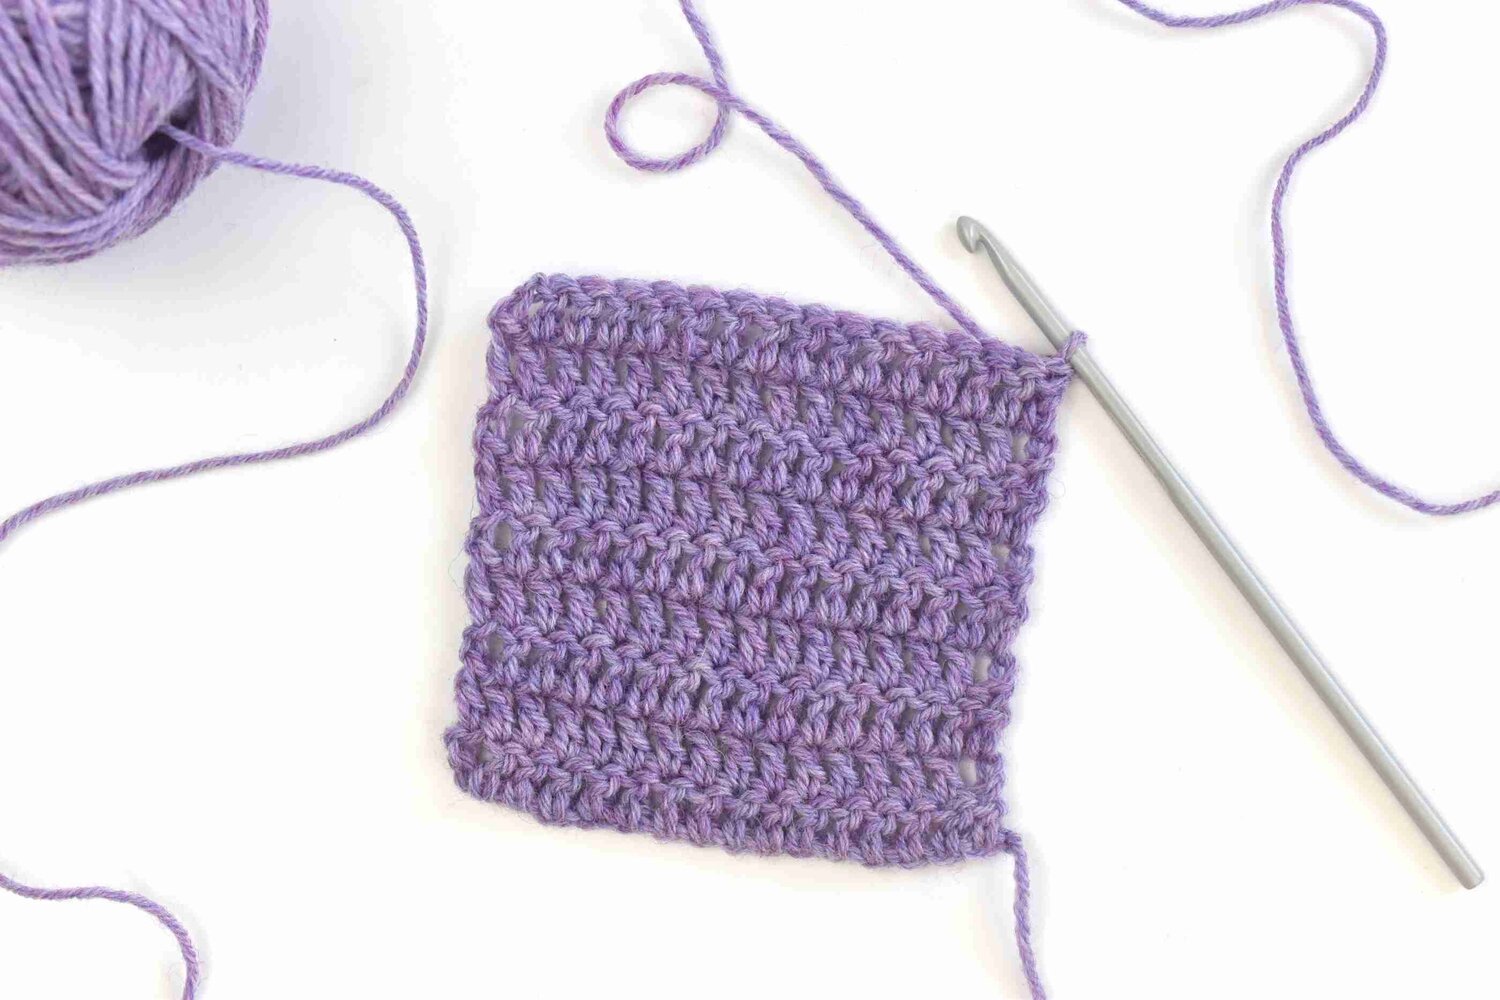 Learn to crochet with Jennifer — Yarn